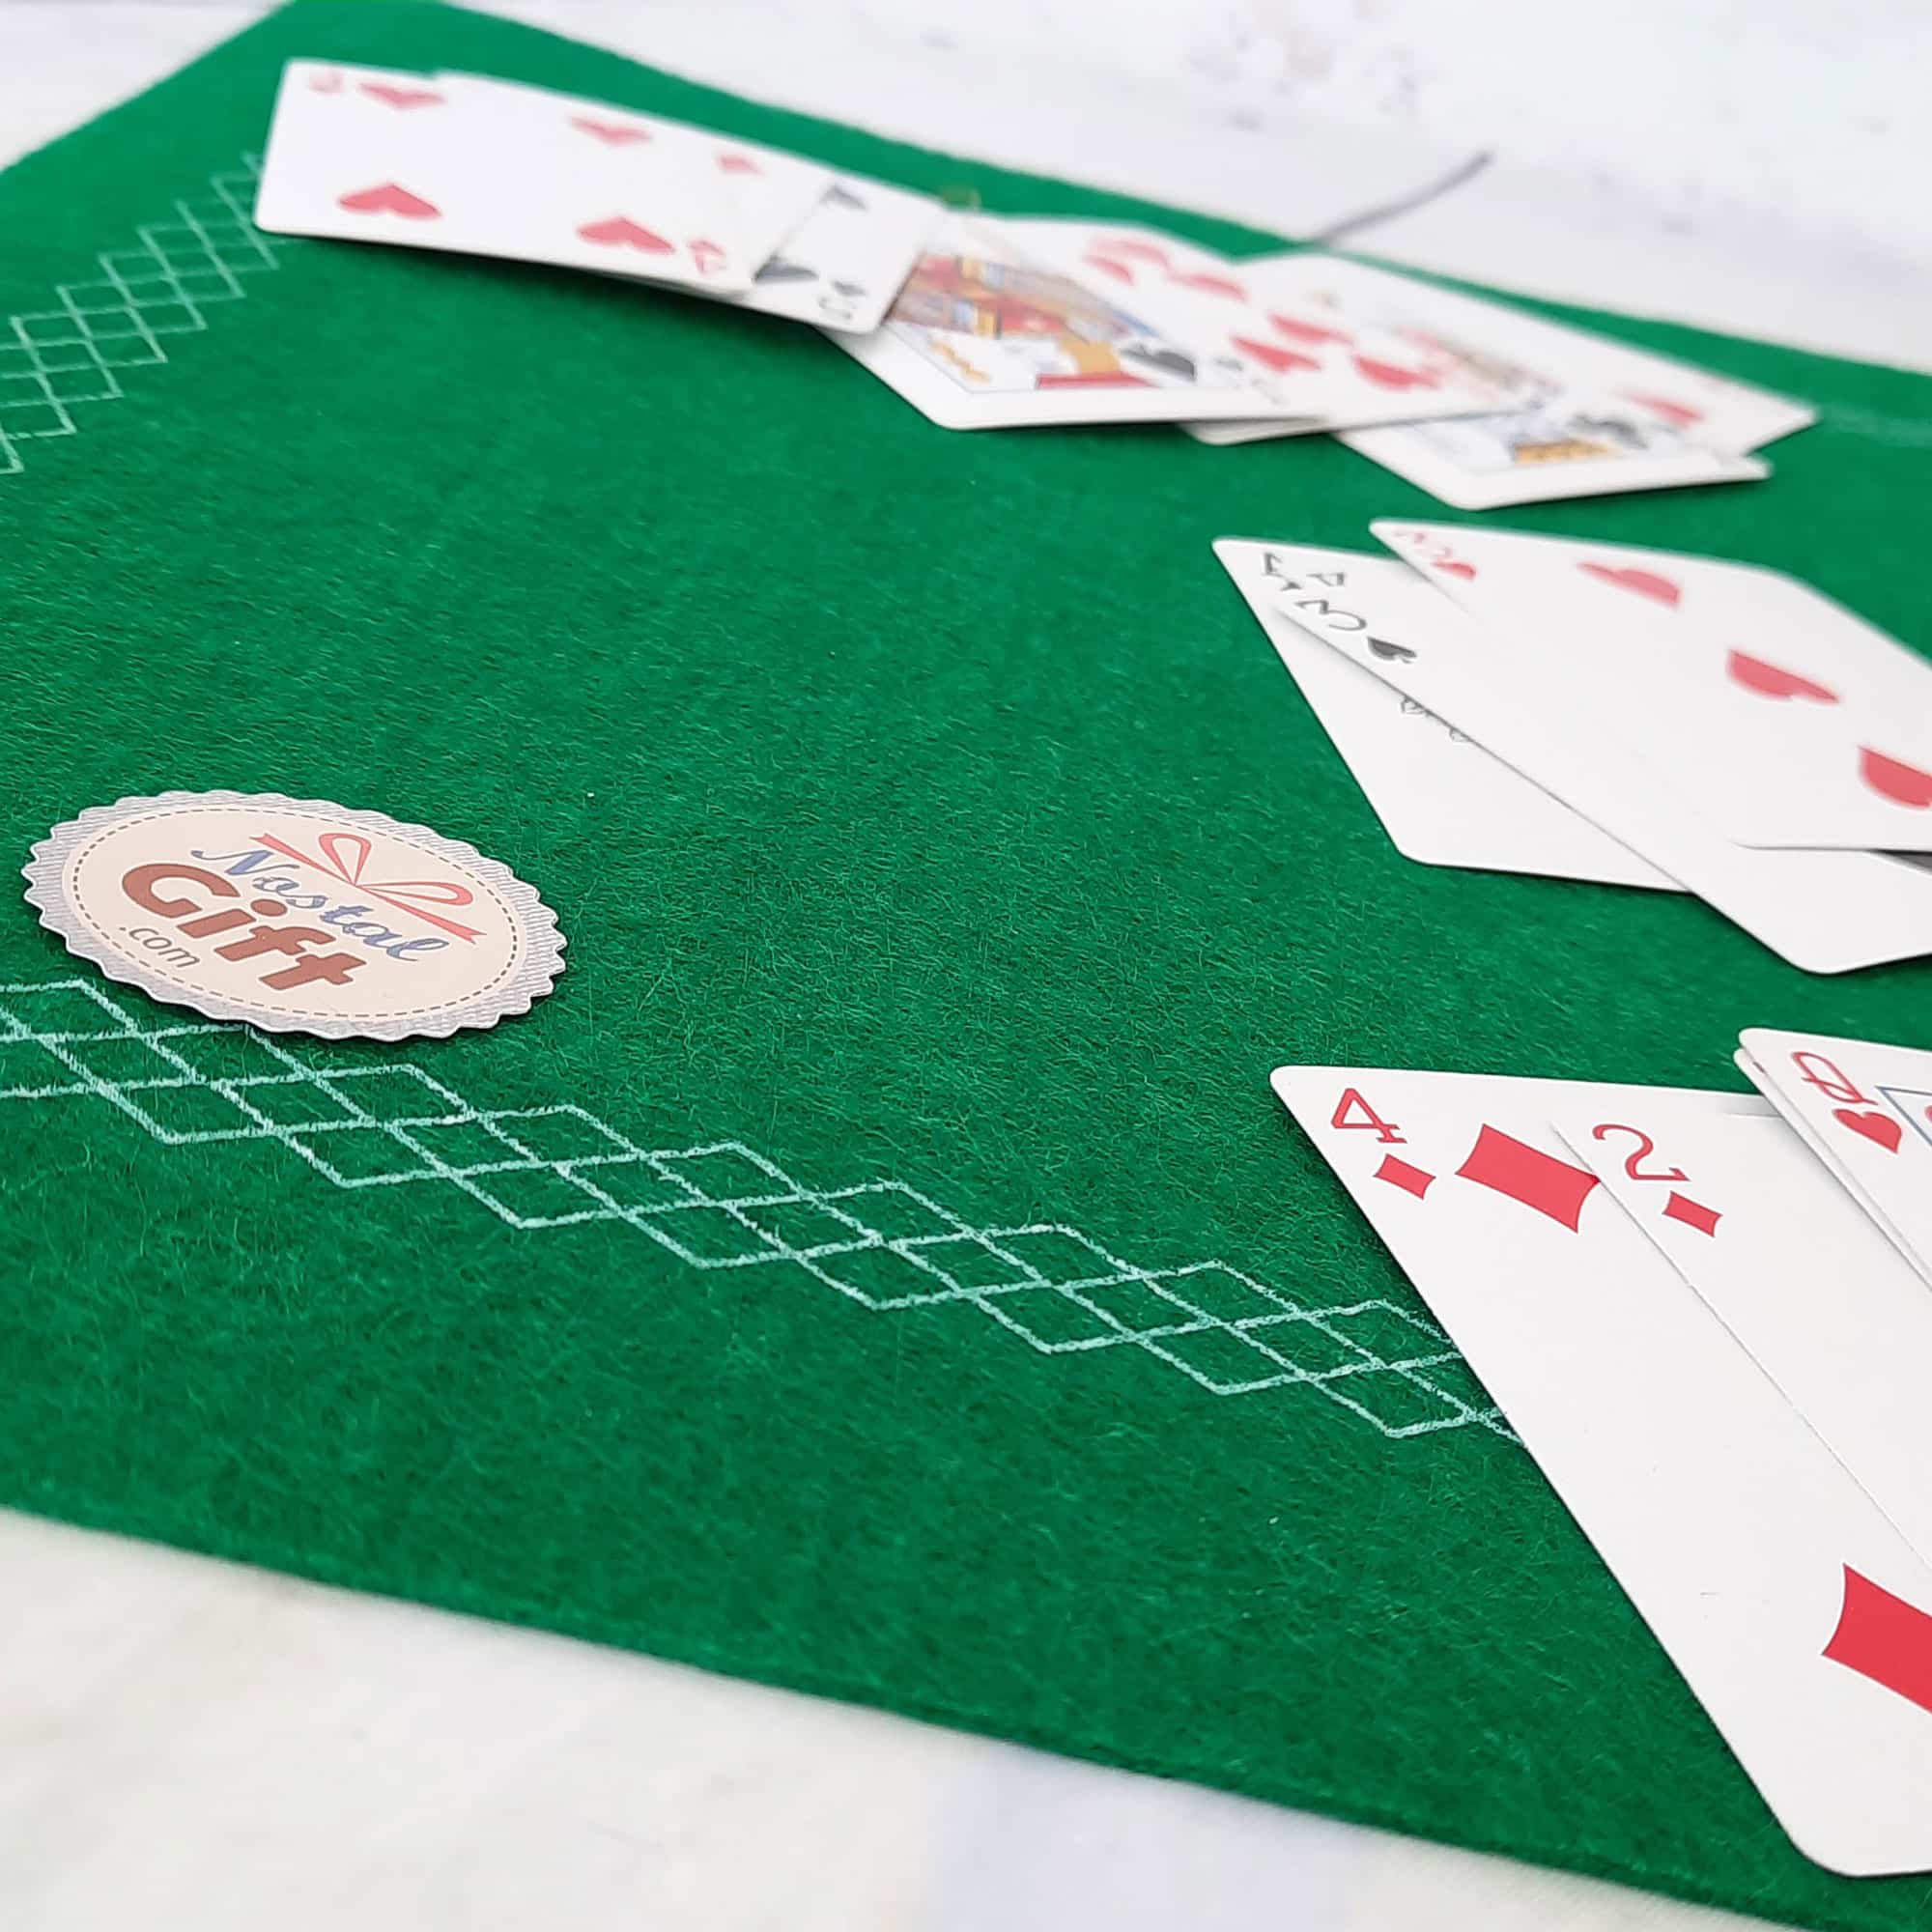 Tapis Cartes 60 x 40 cm - Petits jeux de cartes